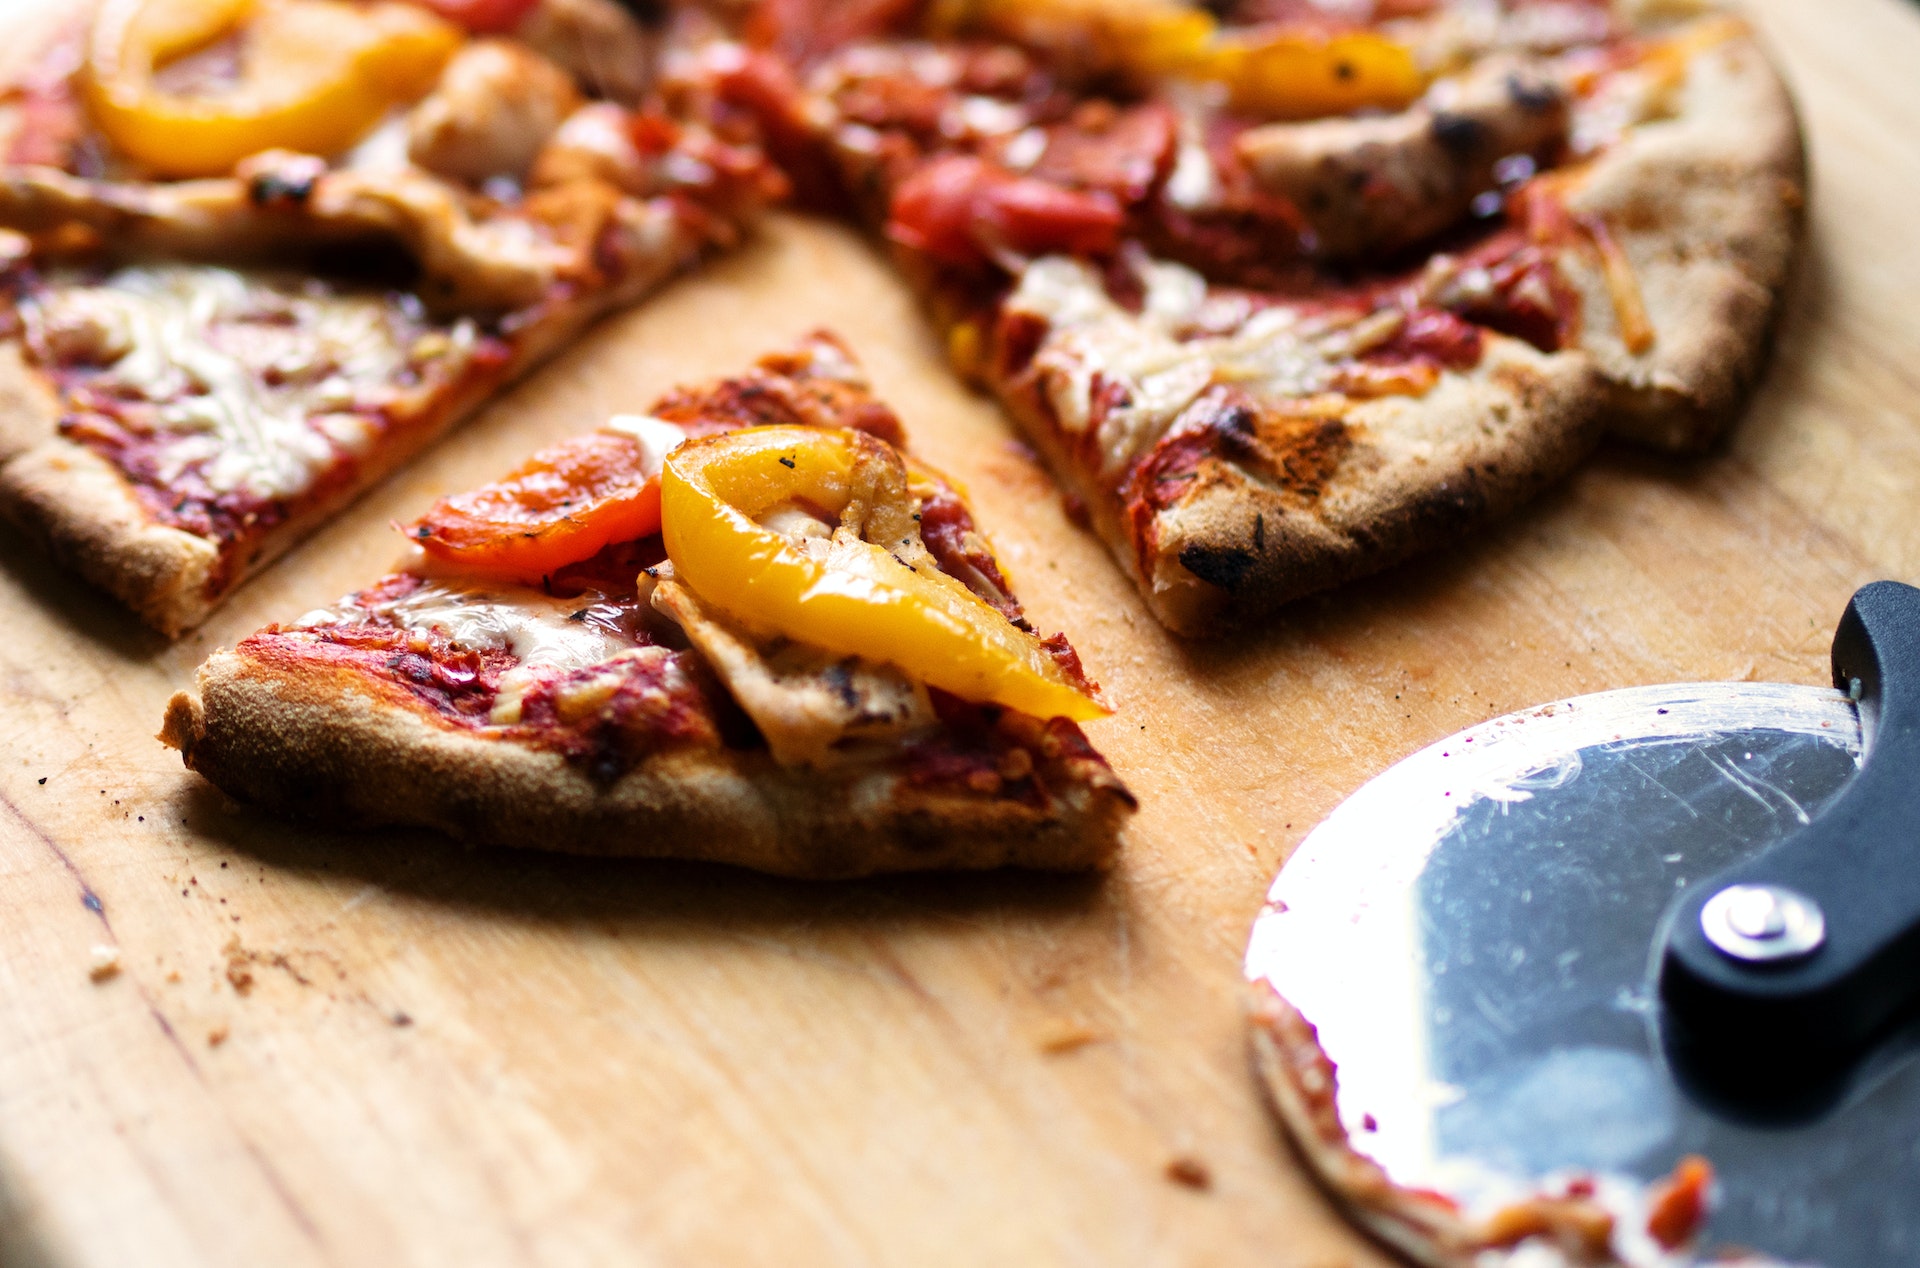 Da un affresco di 2000 anni fa ritrovato a Pompei emerge che i nostri antenati erano soliti preparare la pizza con la frutta al posto del pomodoro.